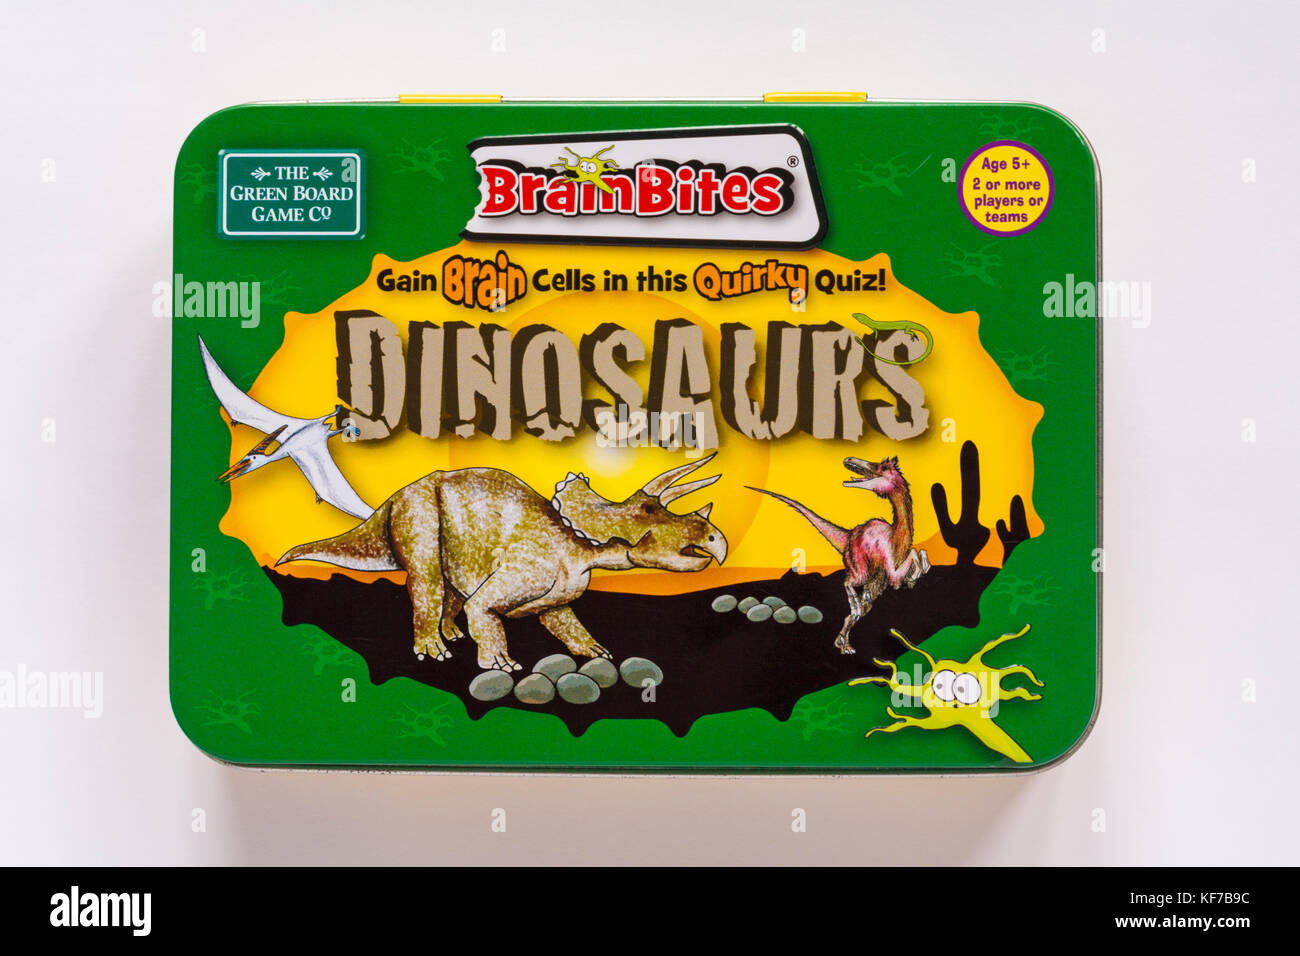 Dinosauri Brainbites ottenere cellule cerebrali in questo bizzarro quiz per la scheda verde gioco Co isolato su sfondo bianco Foto Stock